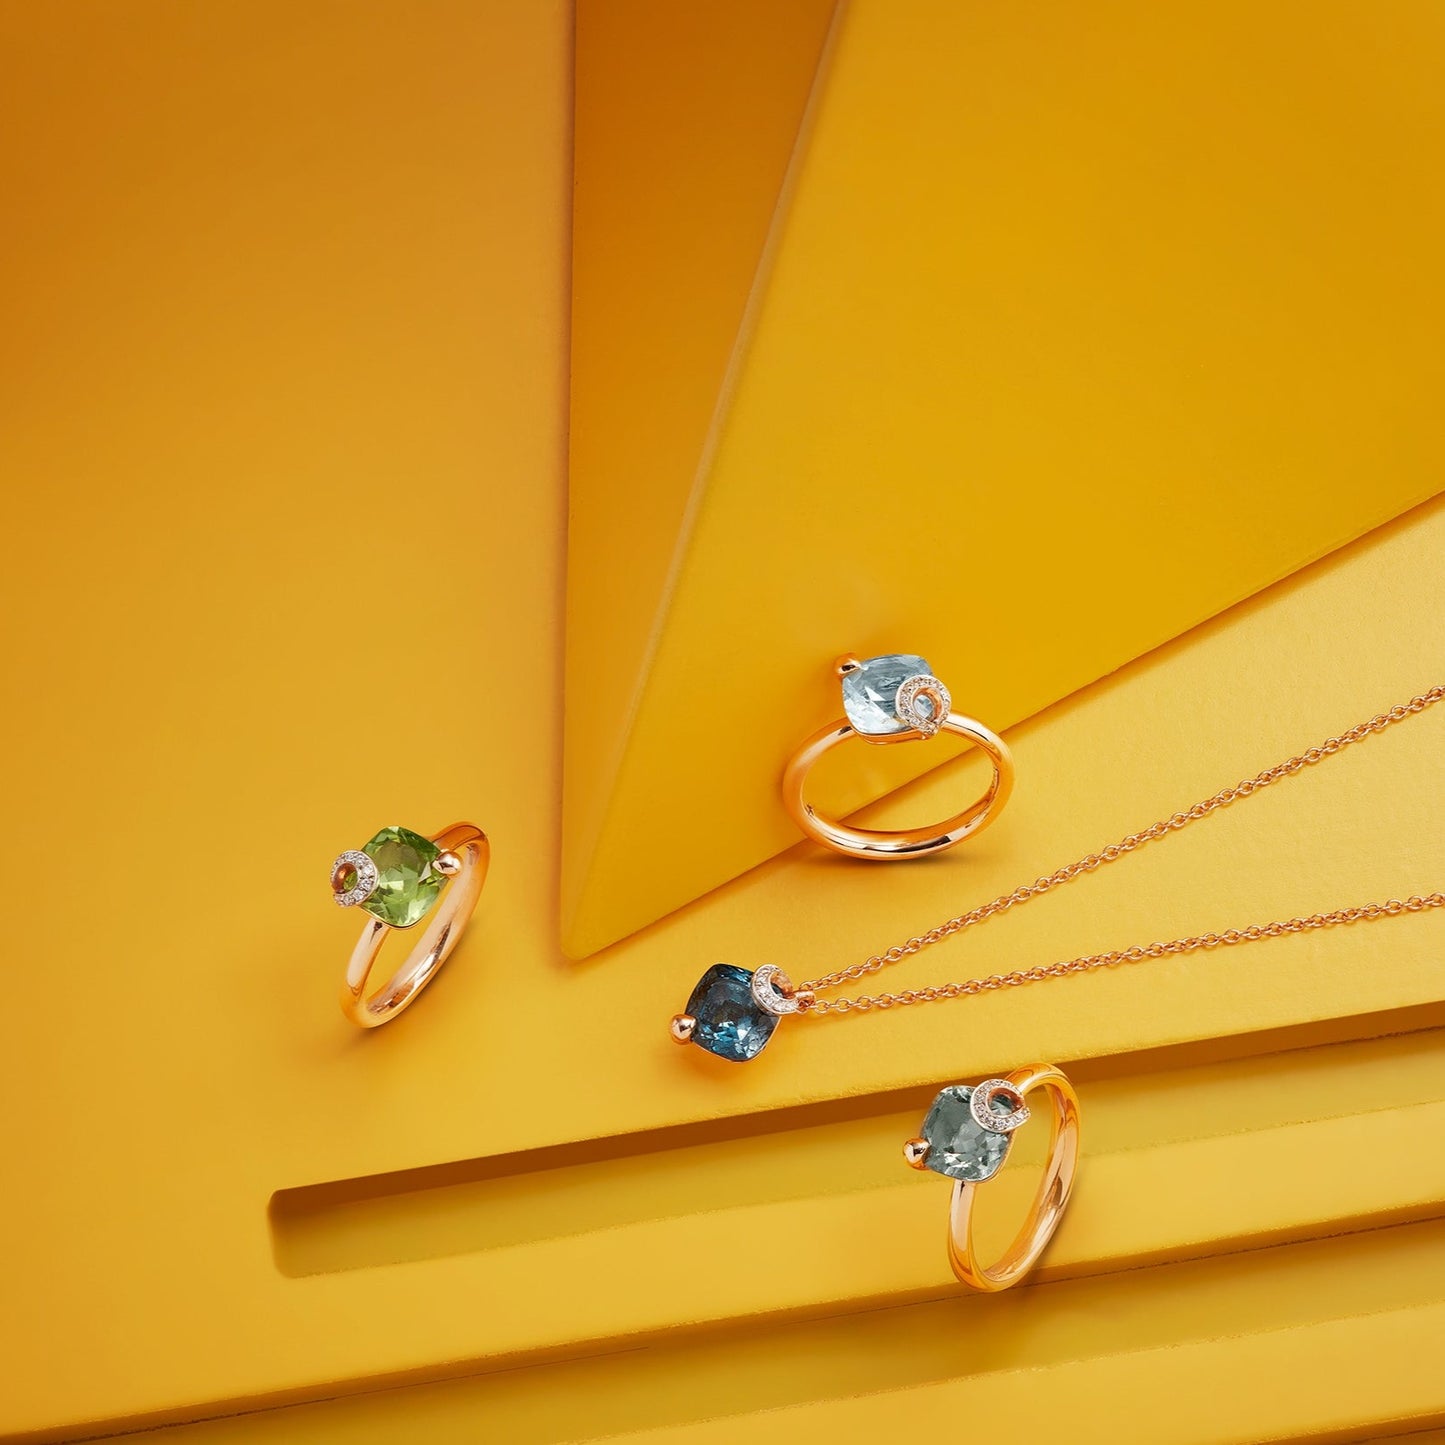 Centoundici Mini Ring, Roségold mit Prasolite & Diamantpavé von Grimaldo Firenze online kaufen (Ref. 11-RG03TL-PW-01)